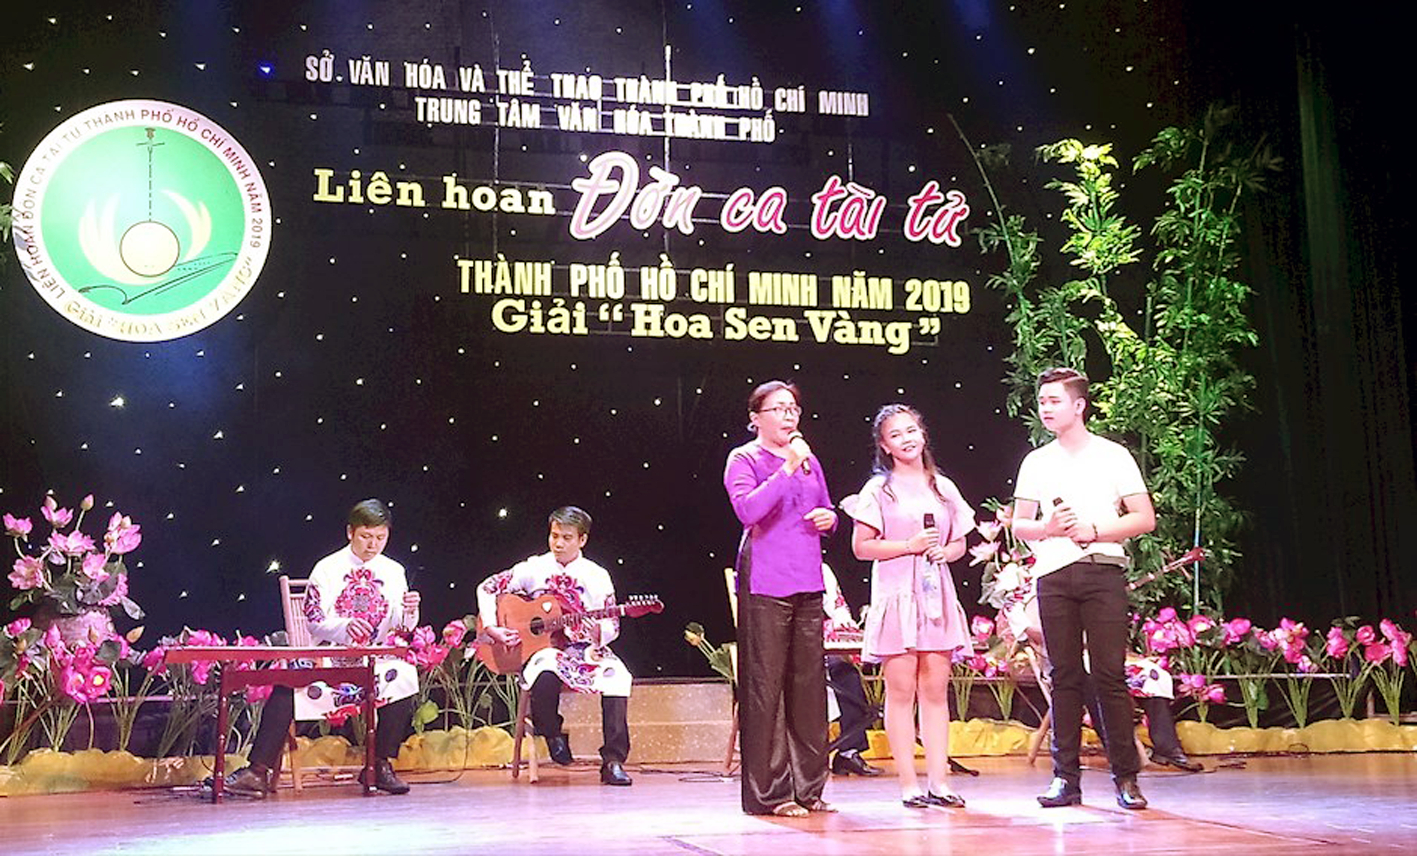 Liên hoan đờn ca  tài tử tại TP.HCM - giải Hoa sen vàng  tổ chức năm 2019